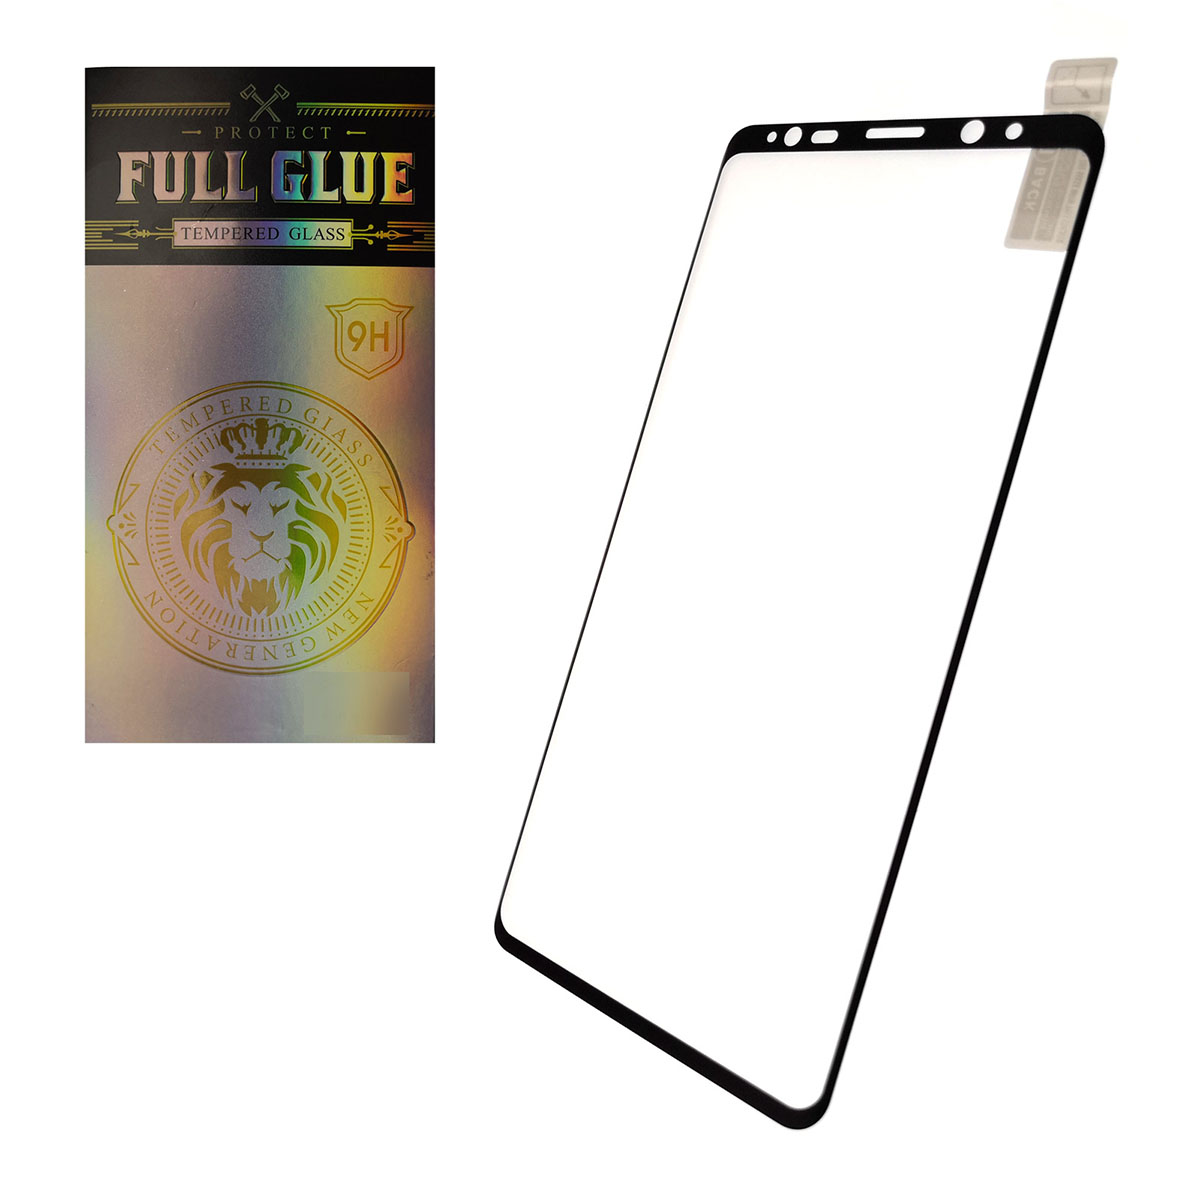 Защитное стекло PROTECT FULL GLUE 9H для SAMSUNG Galaxy Note 8 (SM-N950), Note 9 (SM-N960), ударопрочное прозрачное, цвет окантовки черный.